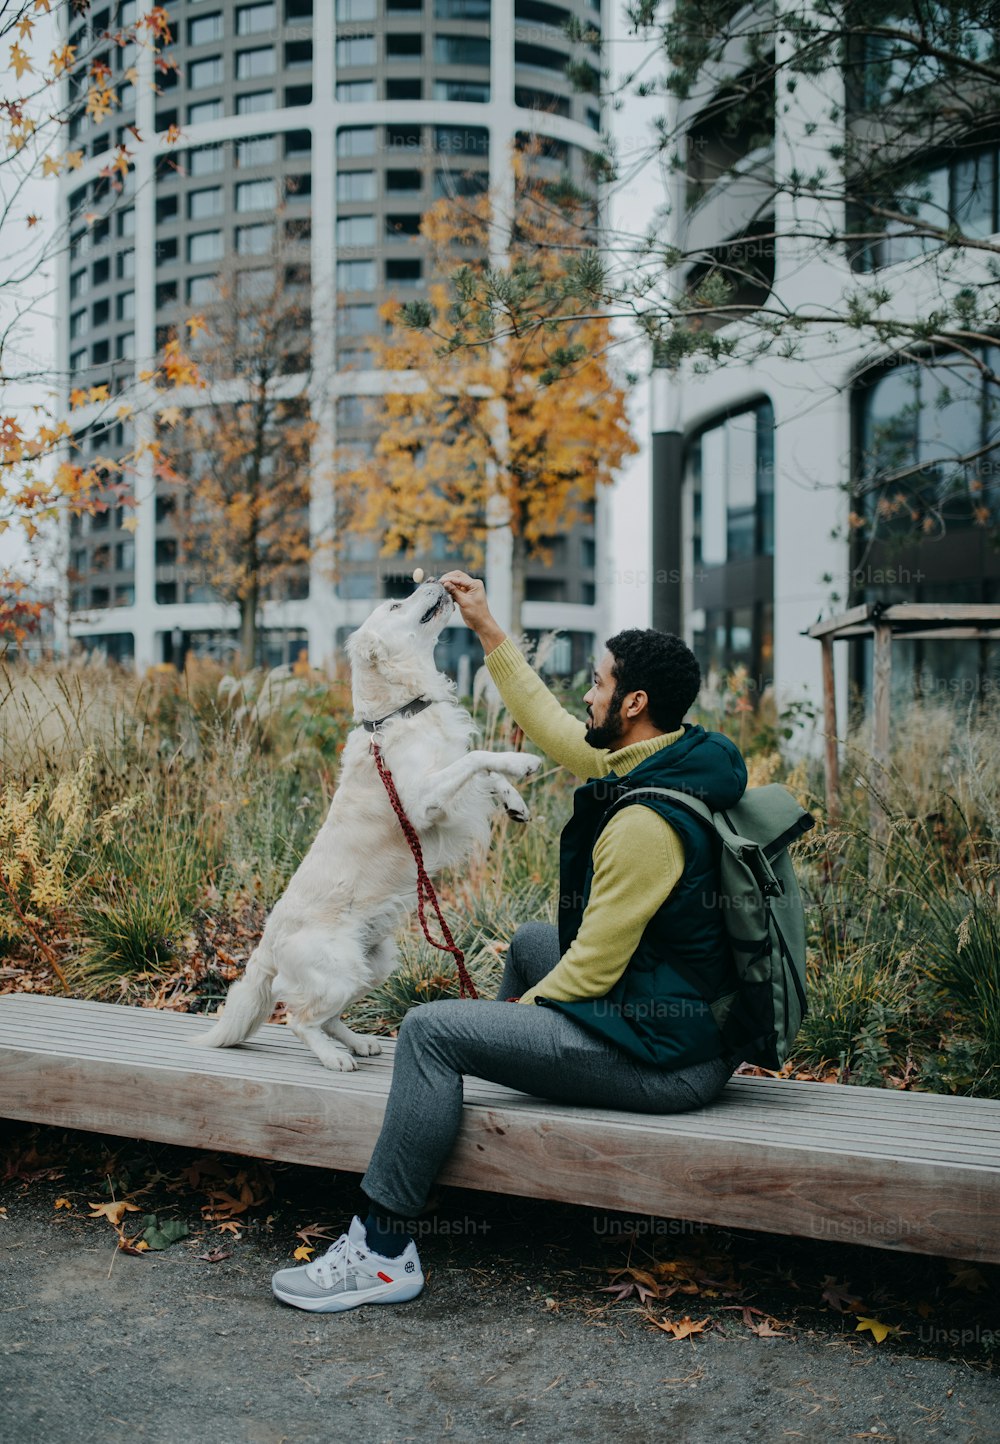 벤치에 앉아 마을에서 야외에서 개를 훈련시키는 청년의 측면보기.